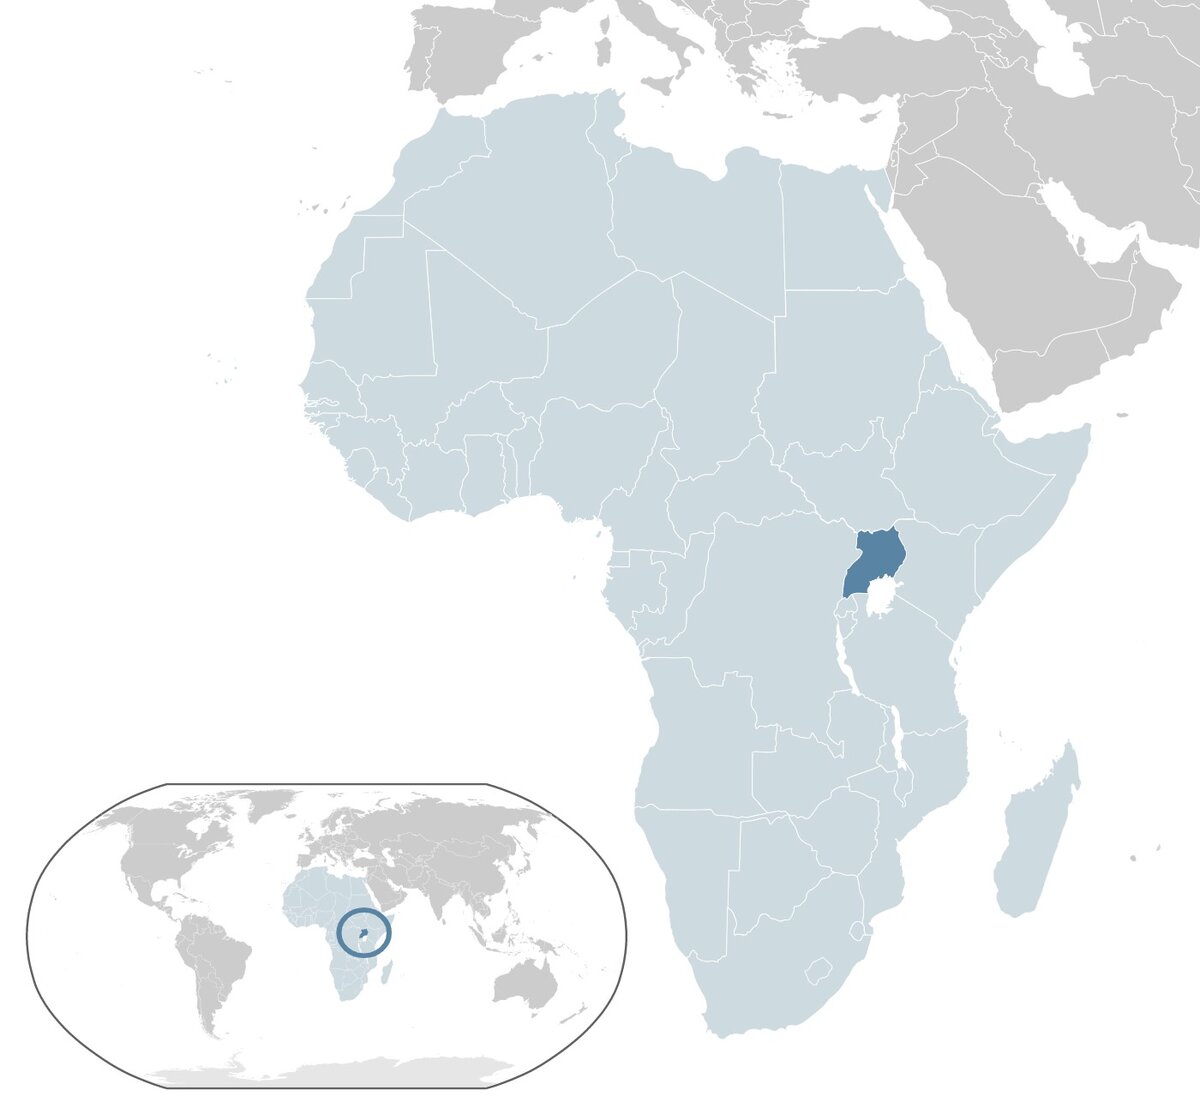 Uganda területét tekintve körülbelül két és félszer, míg lakosságszámát tekintve három és félszer nagyobb Magyarországnál.